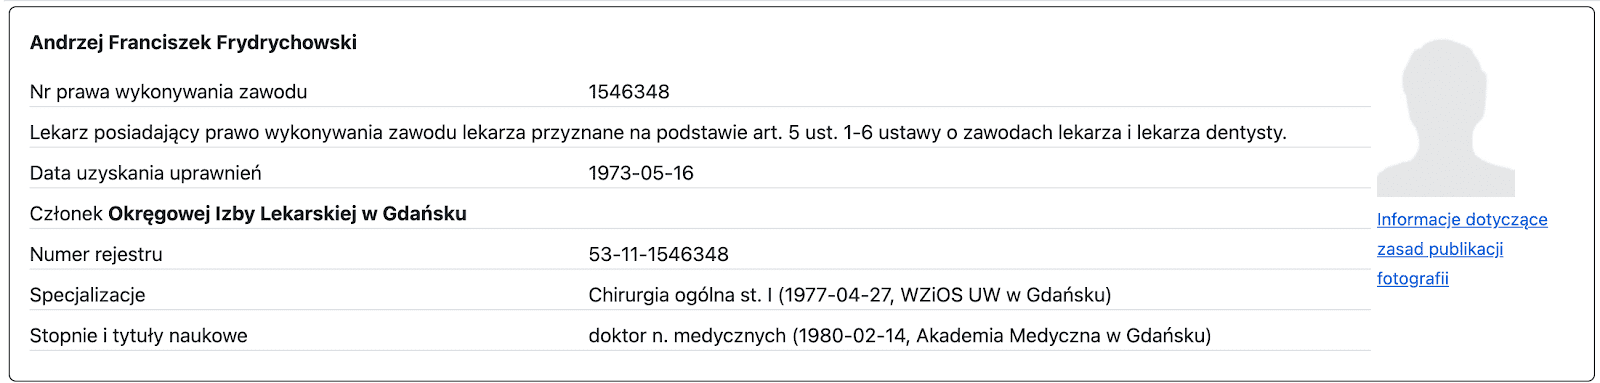 Zrzut ekranu ze strony nil.org.pl.